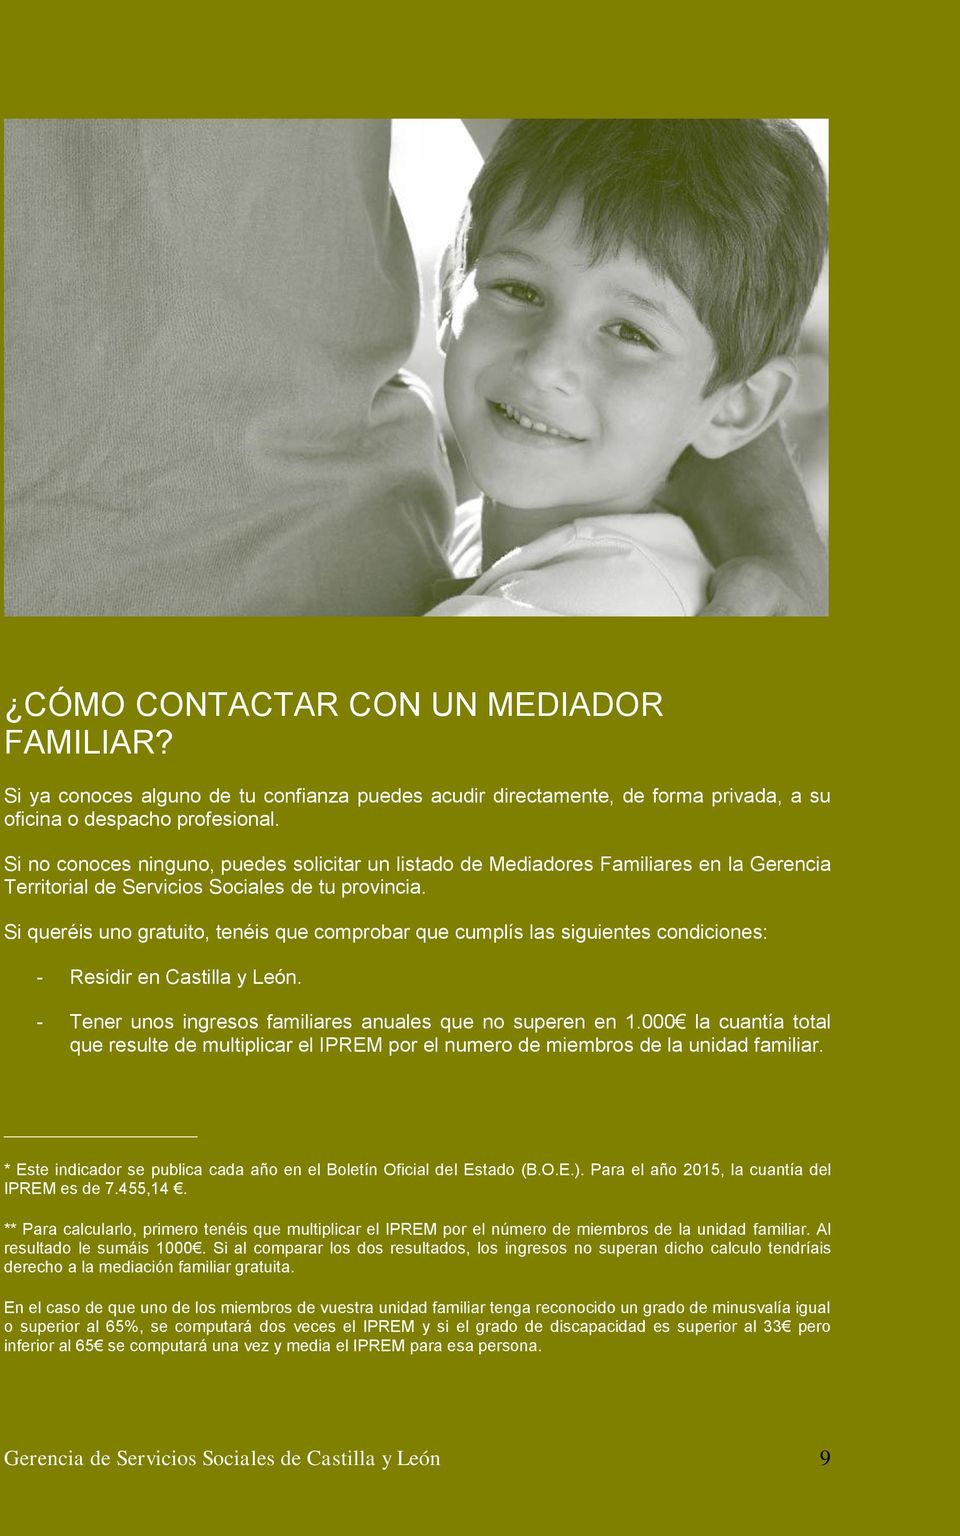 Si queréis uno gratuito, tenéis que comprobar que cumplís las siguientes condiciones: - Residir en Castilla y León. - Tener unos ingresos familiares anuales que no superen en 1.